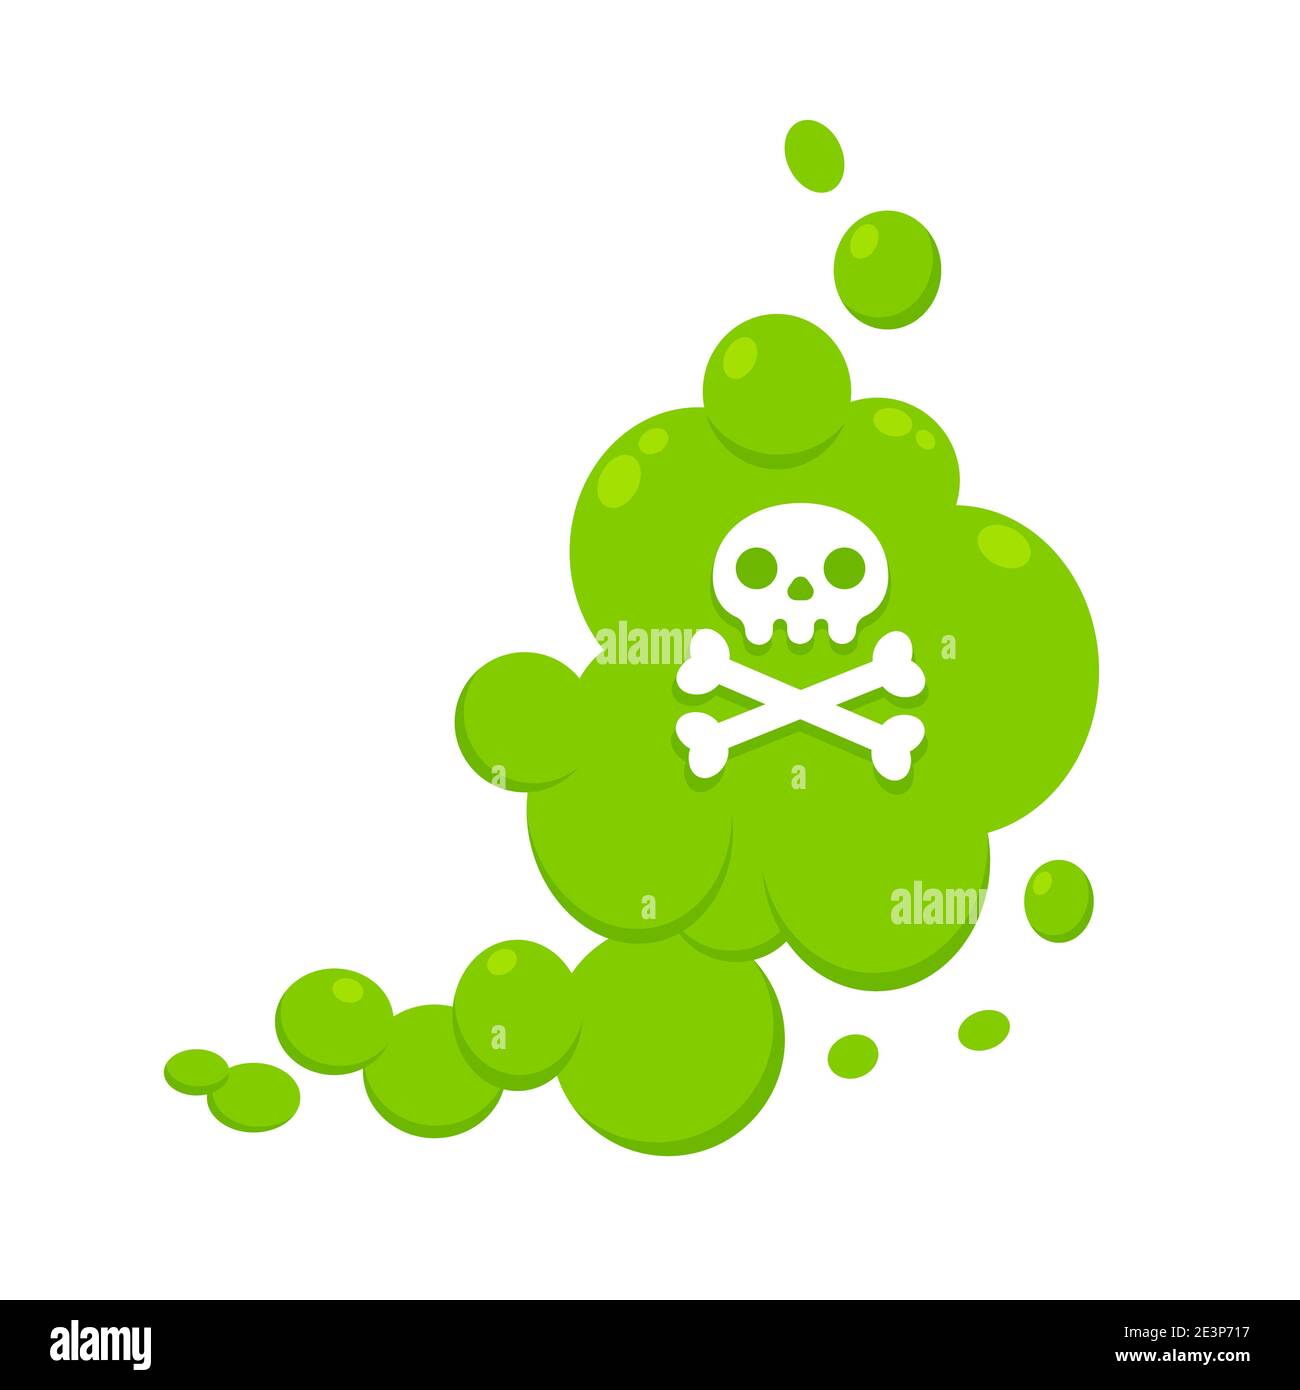 Dibujo de dibujos animados verdes de la nube de estilo plano ilustración vectorial con el cráneo de los crossbones. Mal olor o olor tóxico dibujos animados humo nube aislada Ilustración del Vector